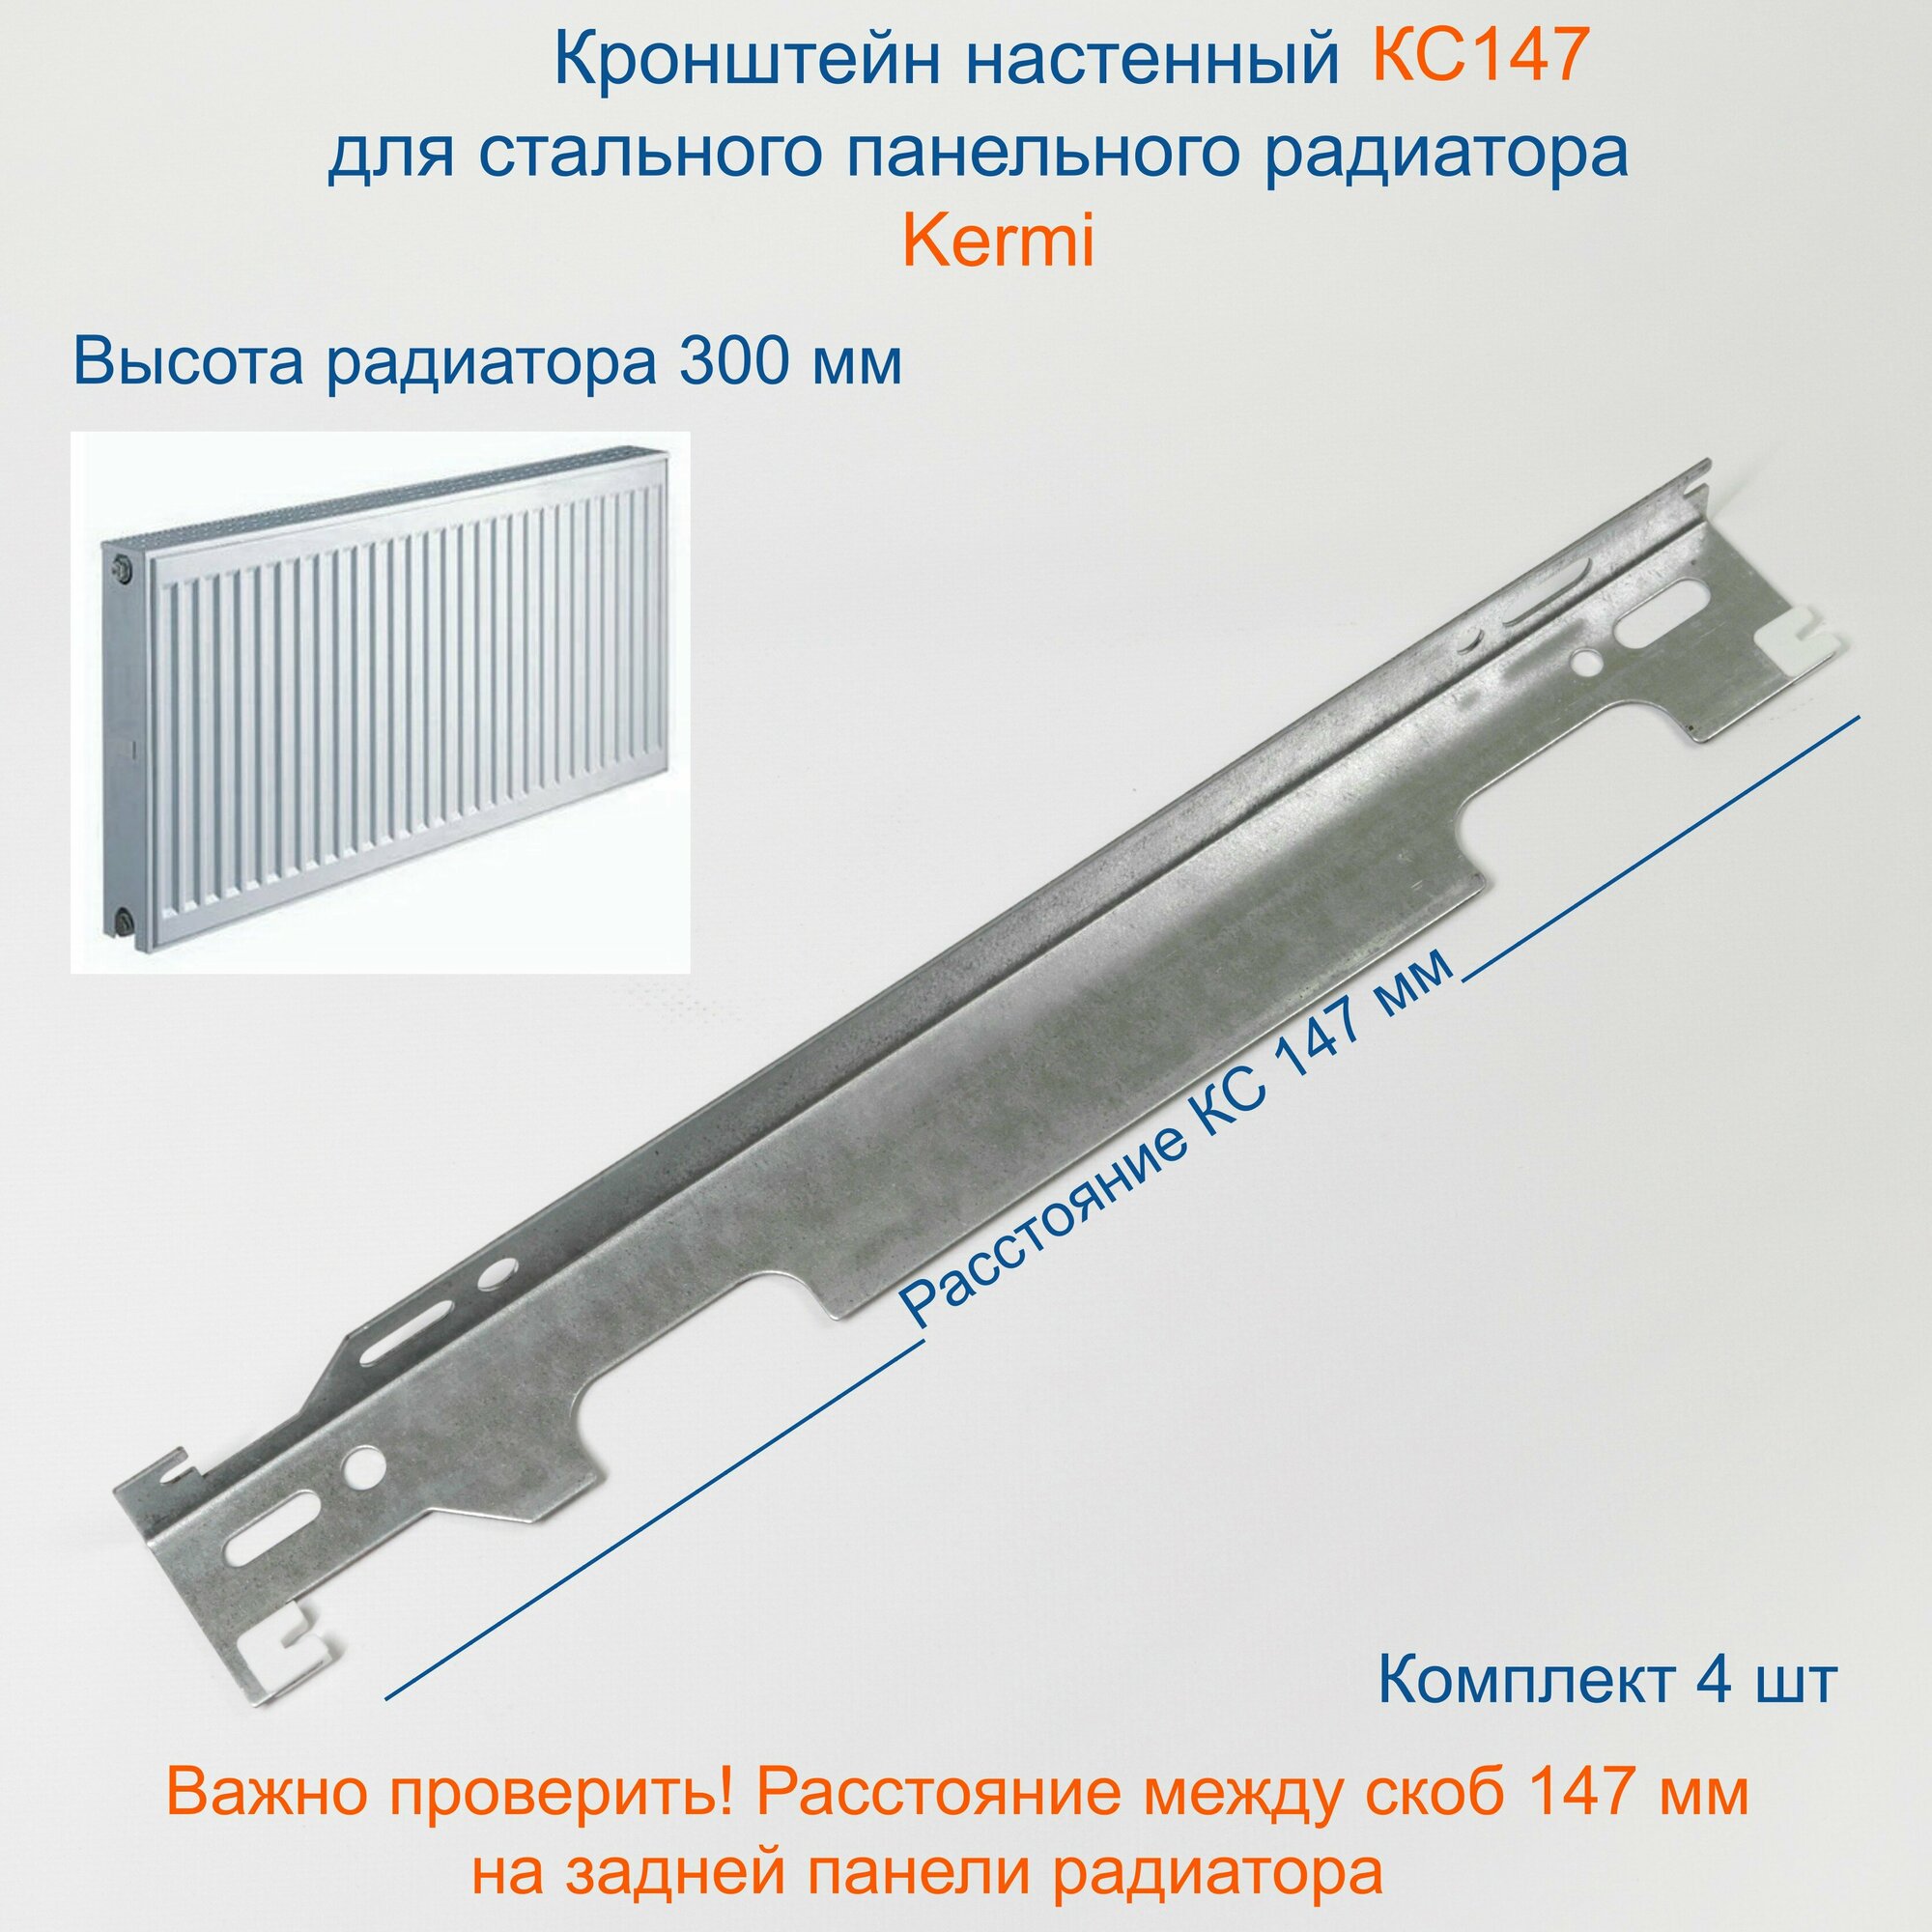 Кронштейн настенный Кайрос для стальных панельных радиаторов Керми 300 мм